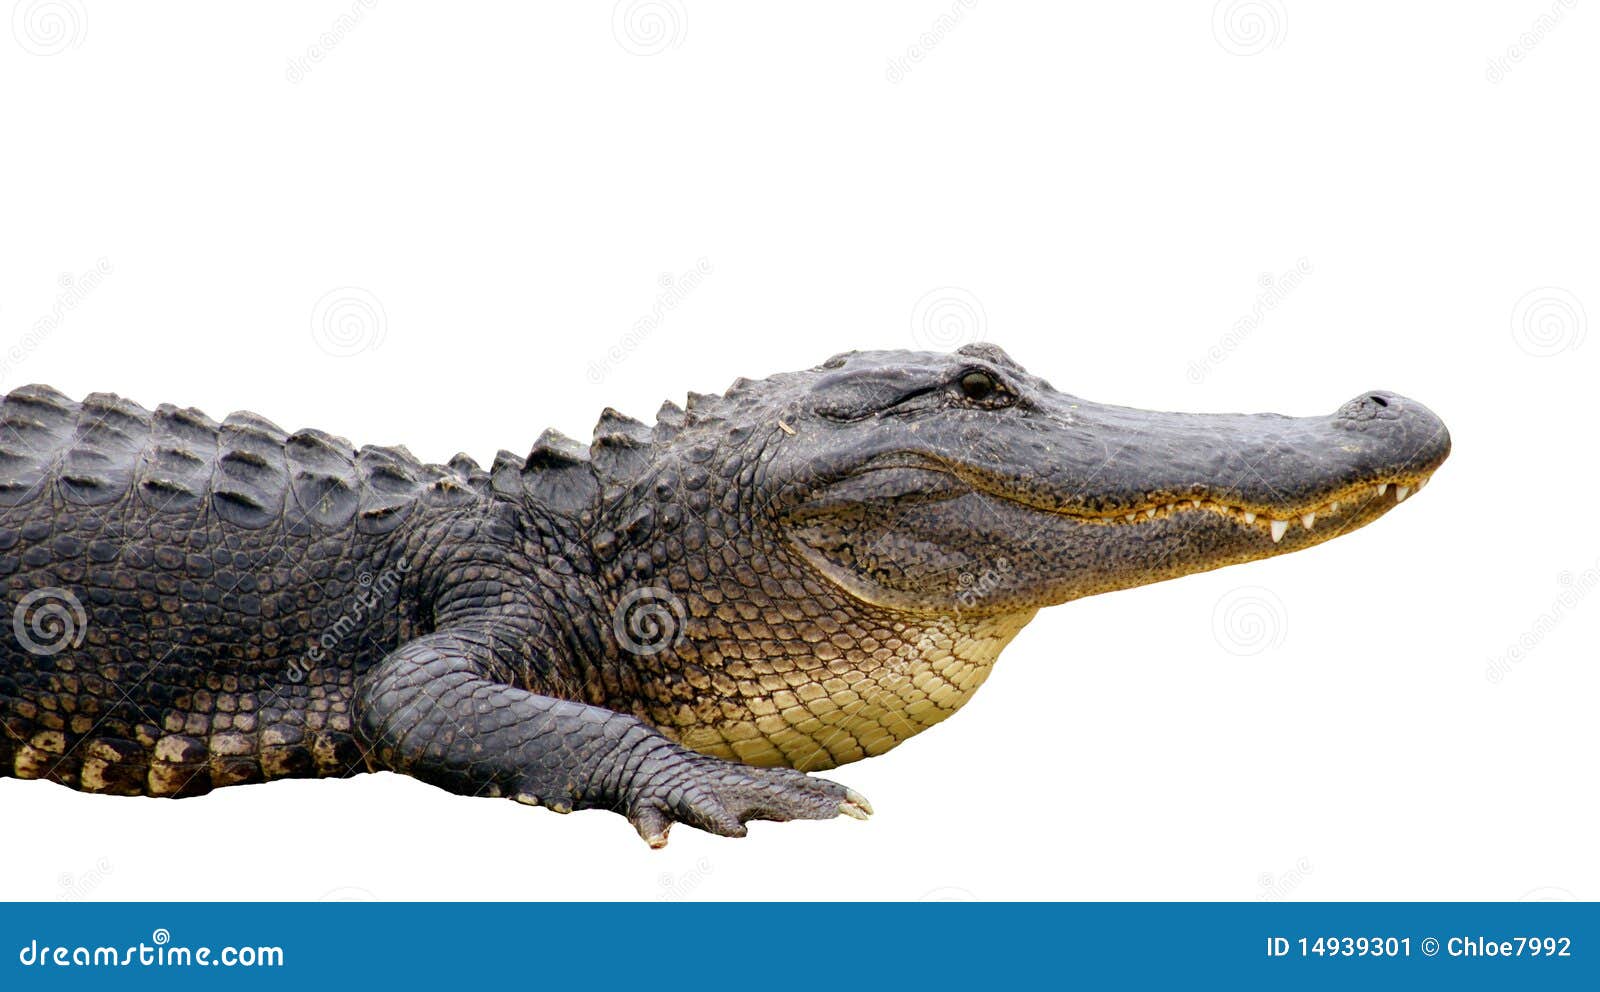  alligator